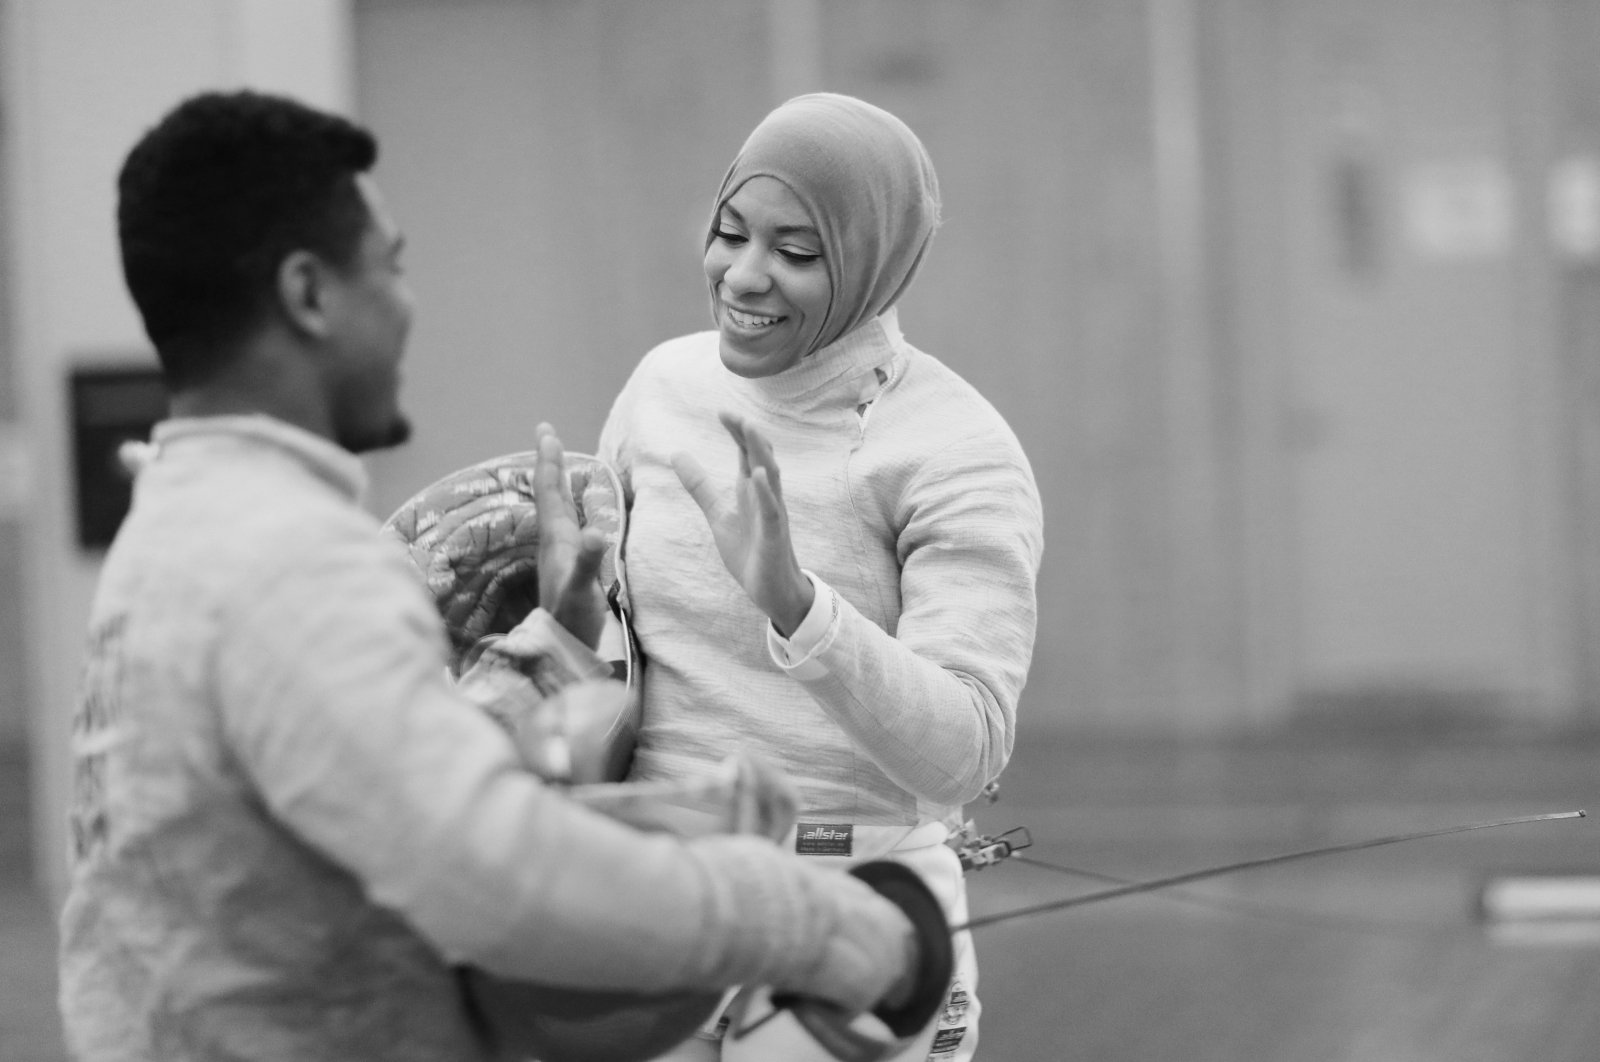 Atlet wanita Muslim menyerukan untuk fokus pada atletis bukan pakaian